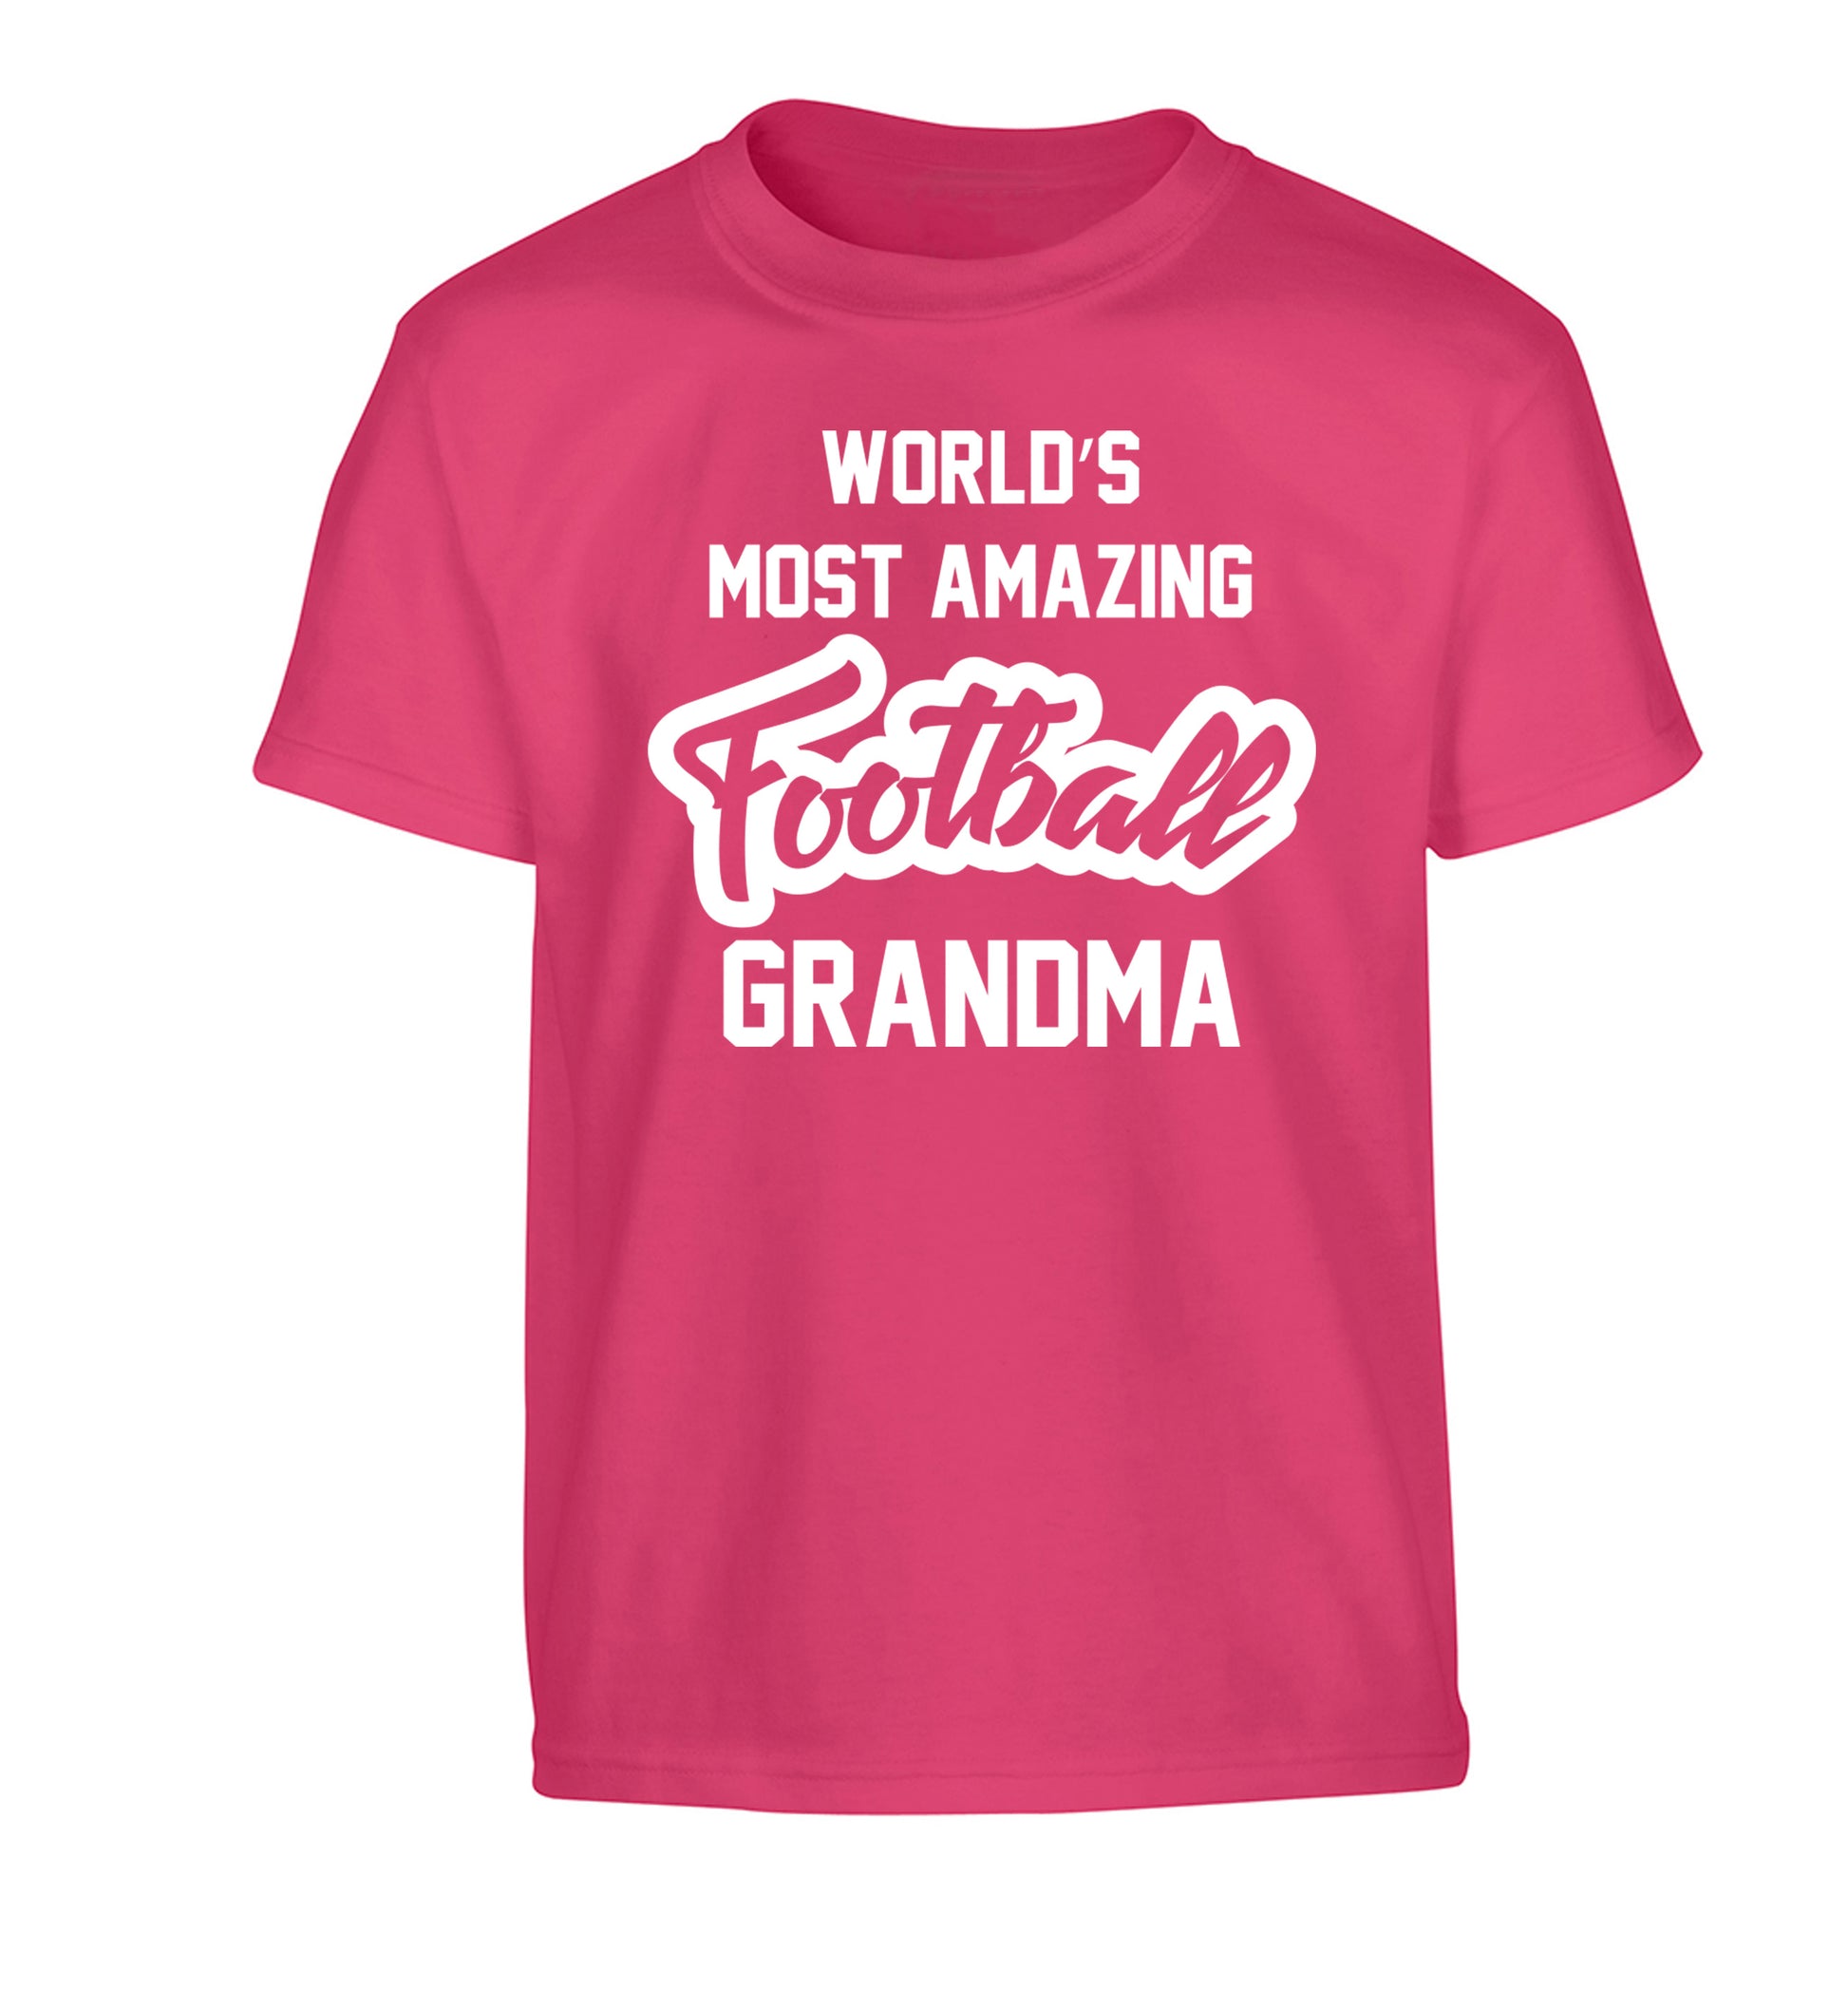 Worlds most amazing football grandma Children's pink Tshirt 12-14 Years